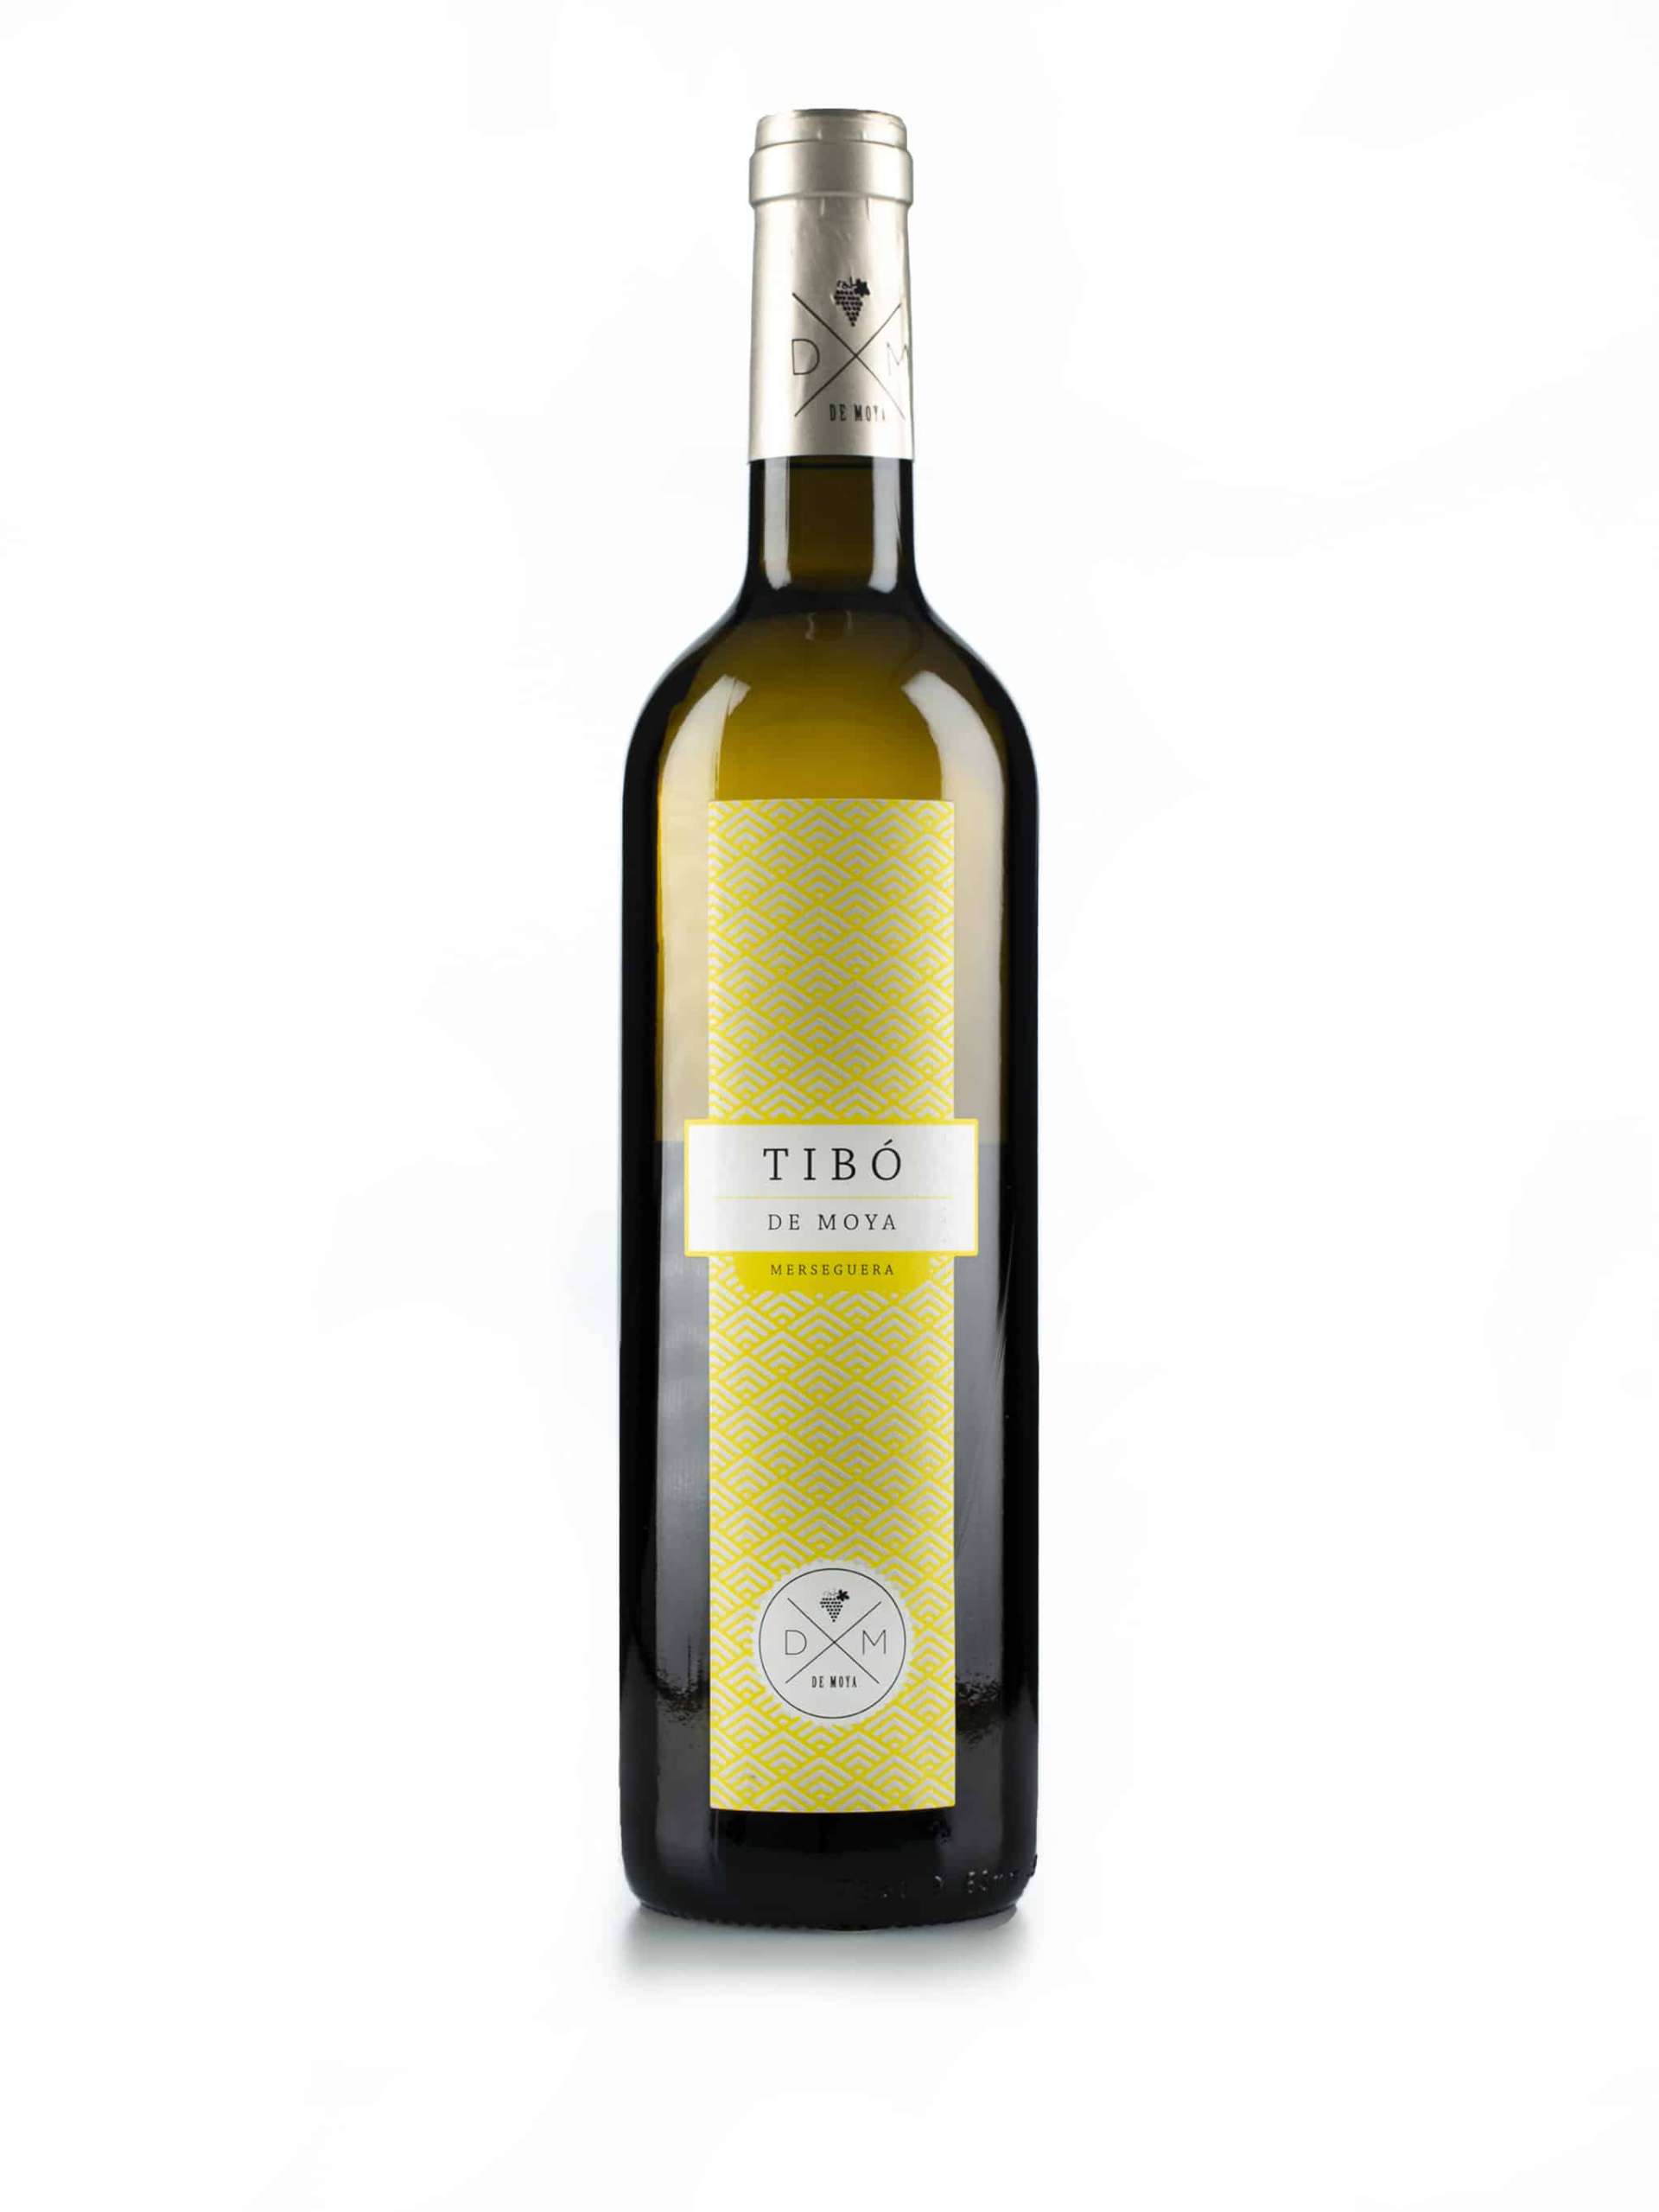 Spaanse witte wijn van wijndomein Bodegas de Moya: Tibo